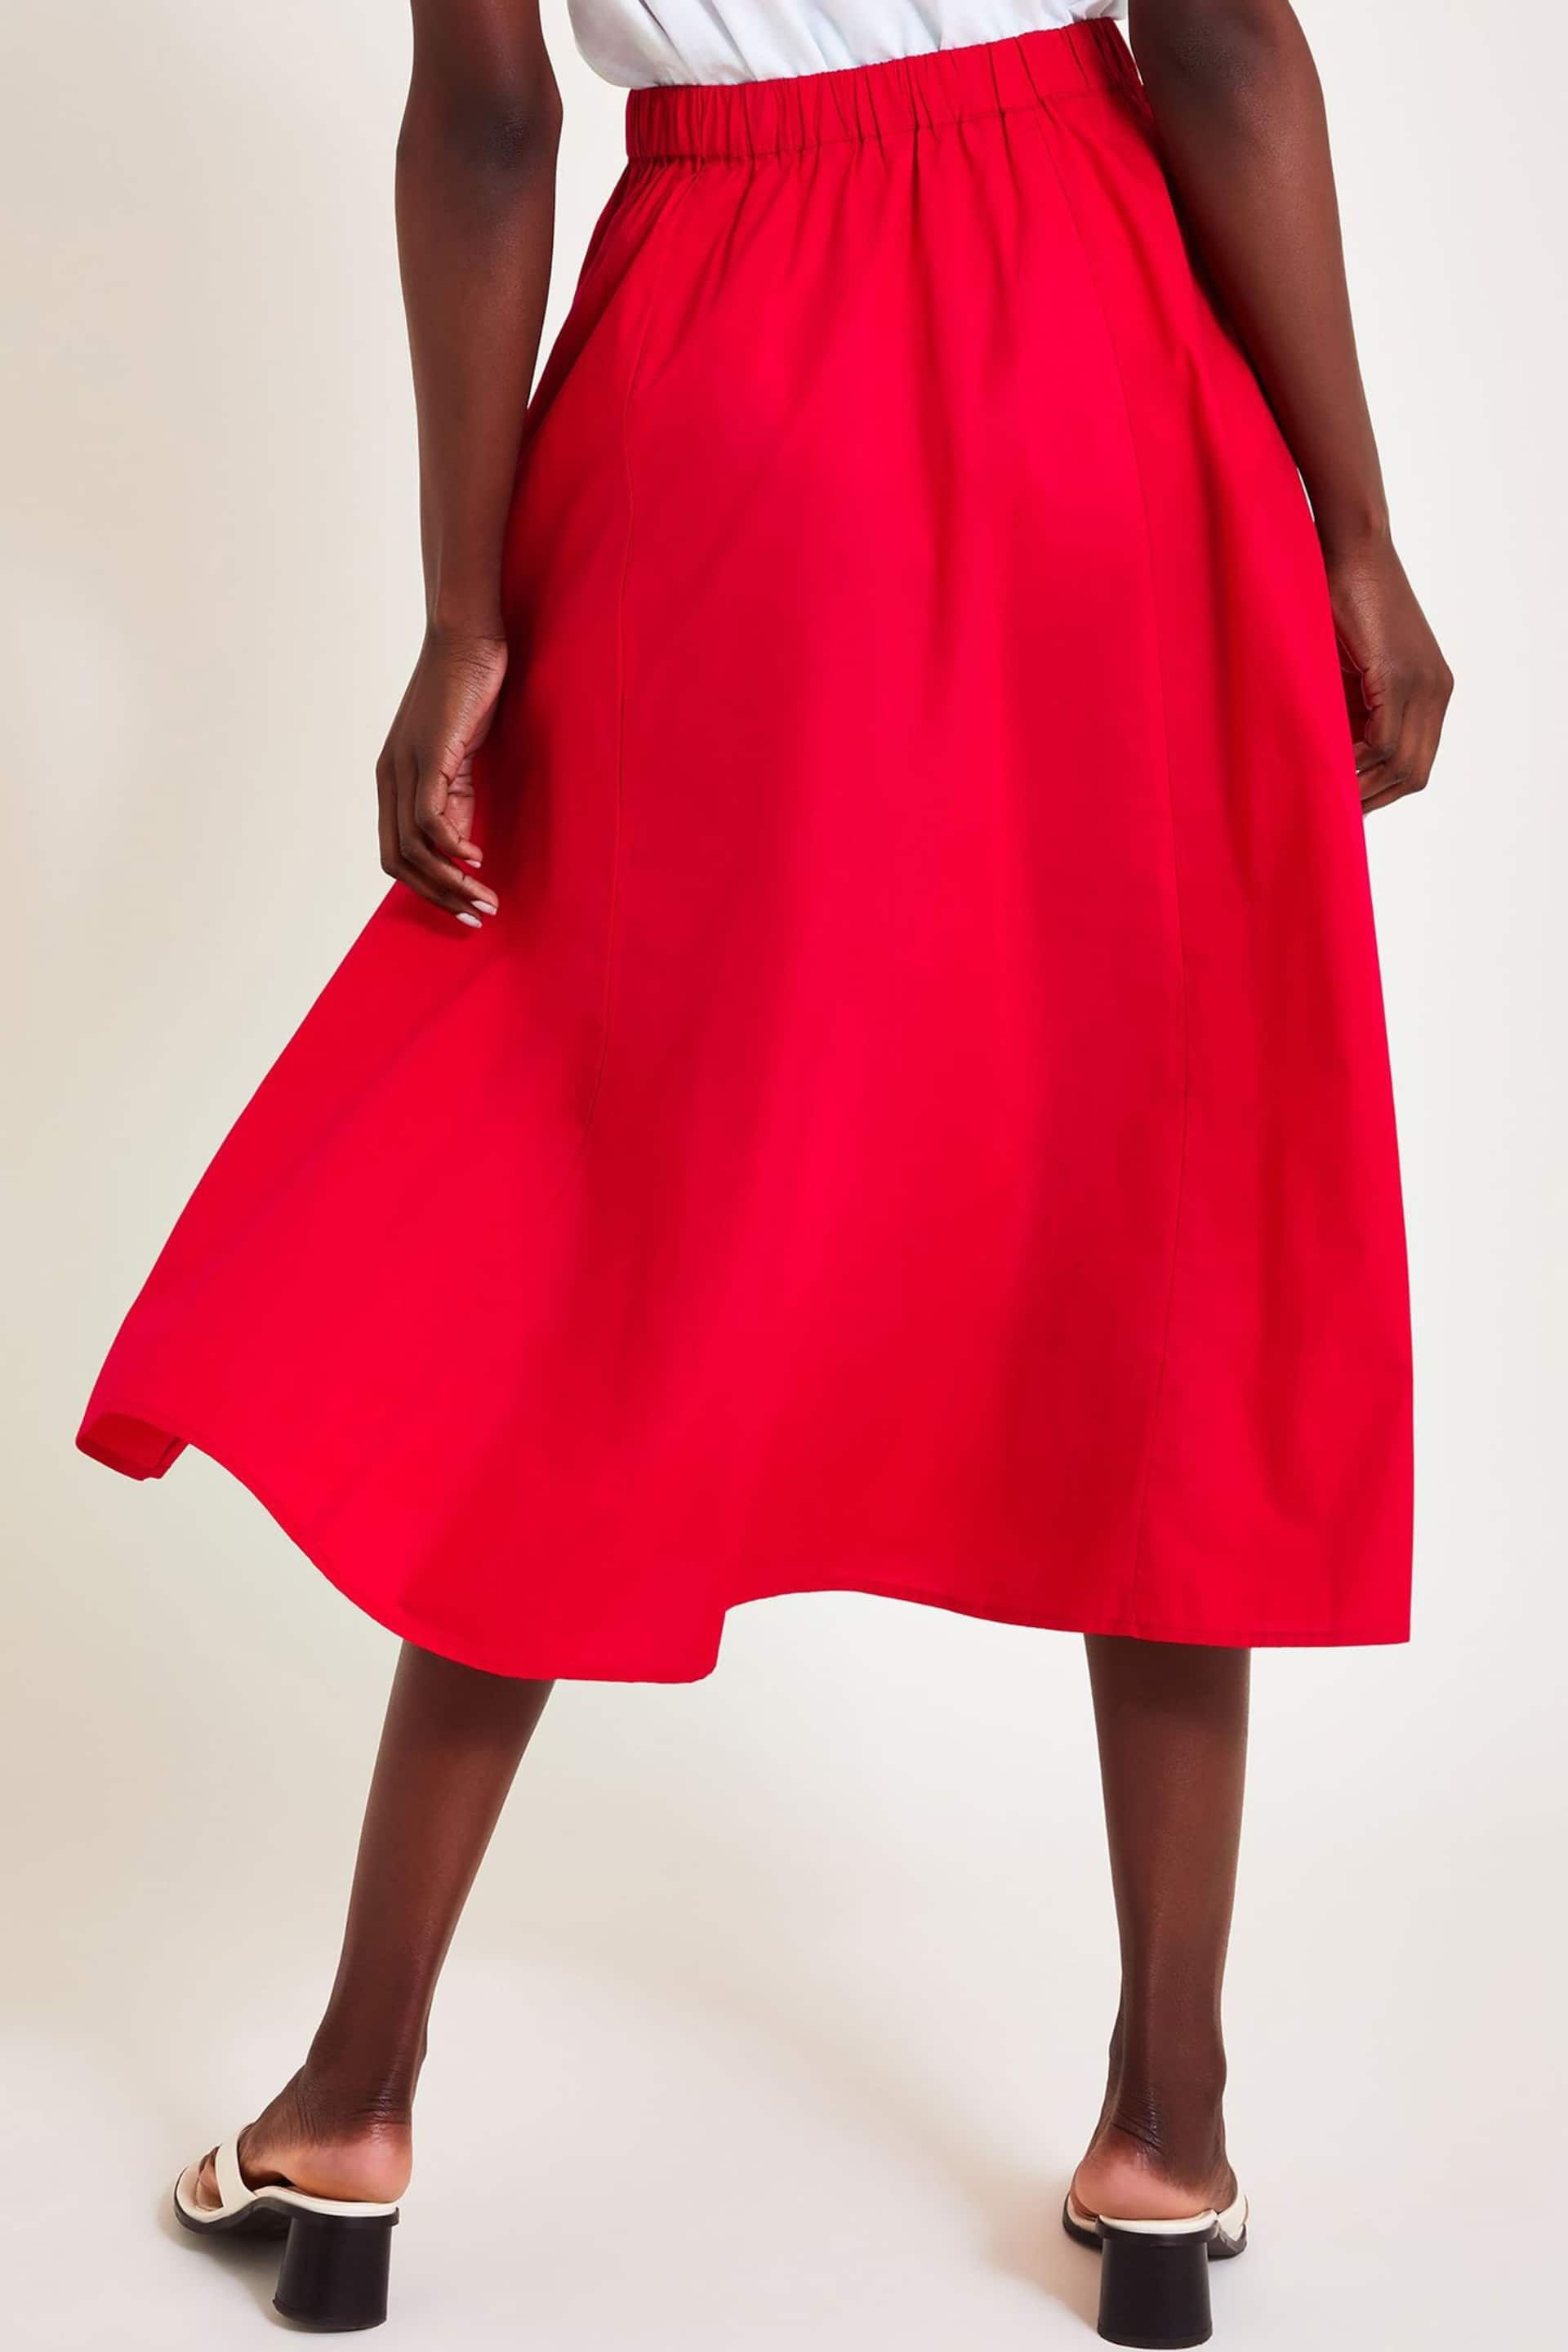 Monsoon Red Rachel Poplin Skirt - Image 2 of 6